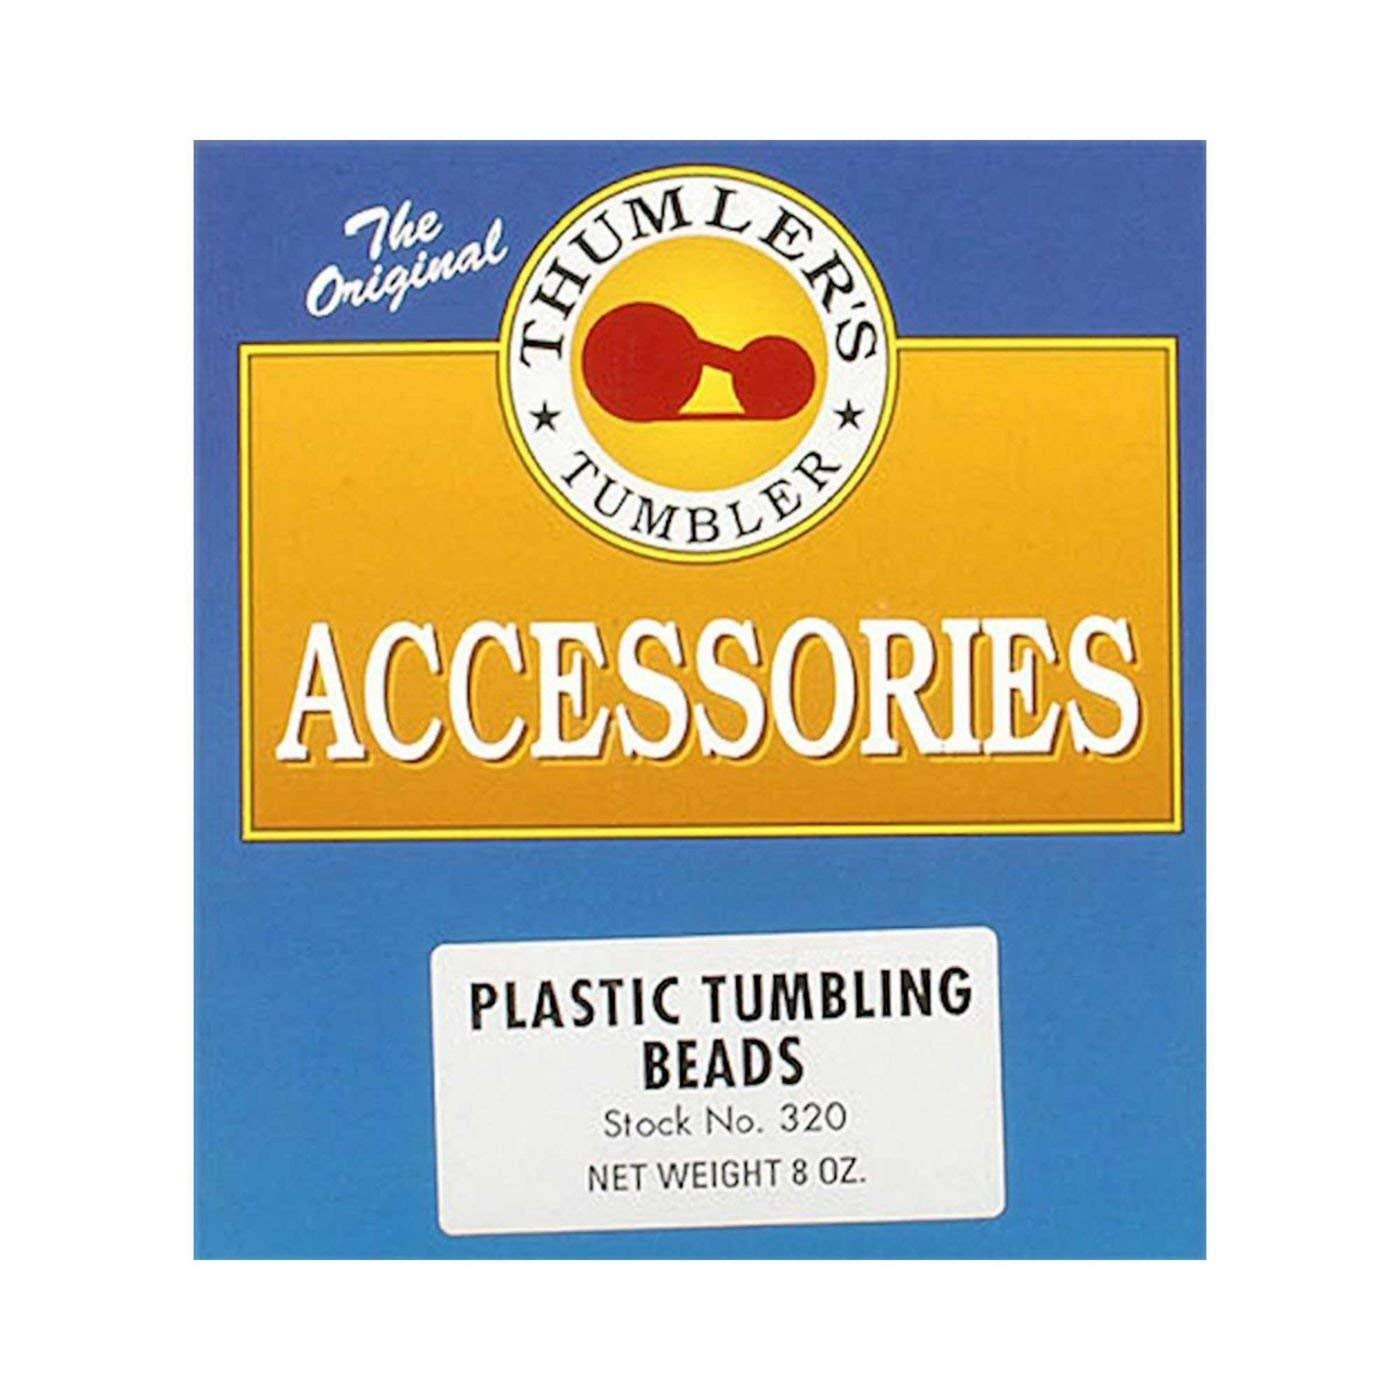 Thumler's Tumbler Plastic Tumbling Beads - 8oz